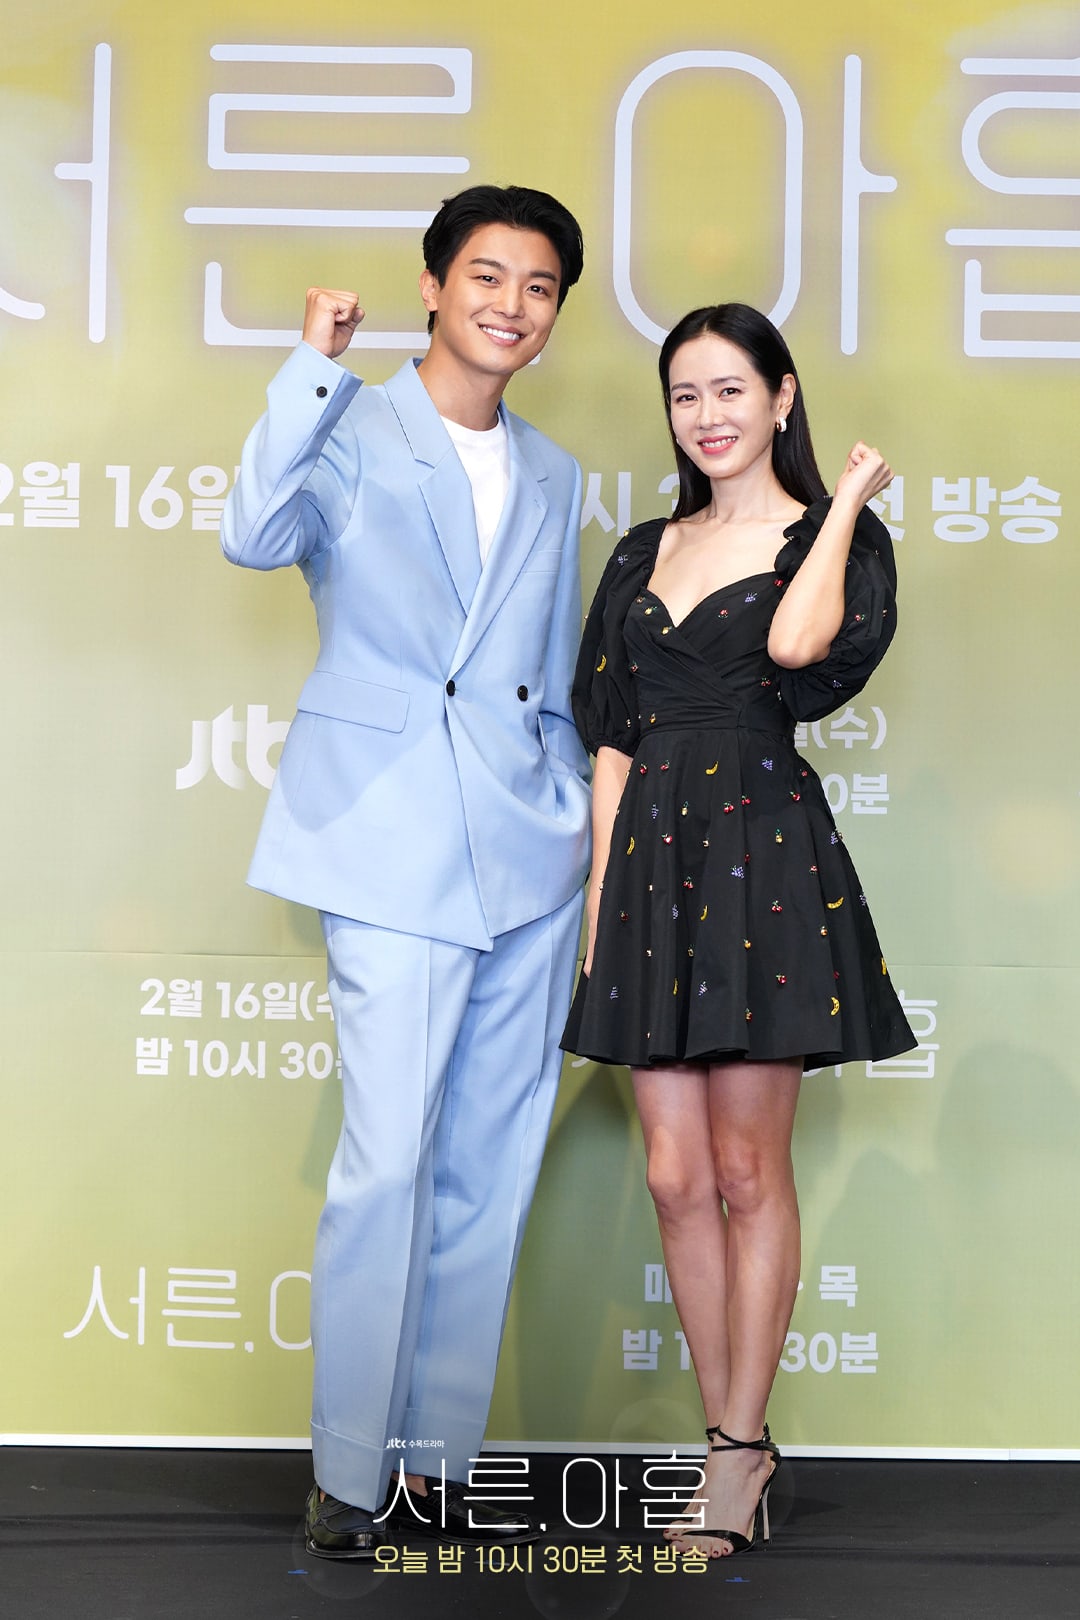 Phim mới của \'chị đẹp\' Son Ye Jin có gì hấp dẫn?